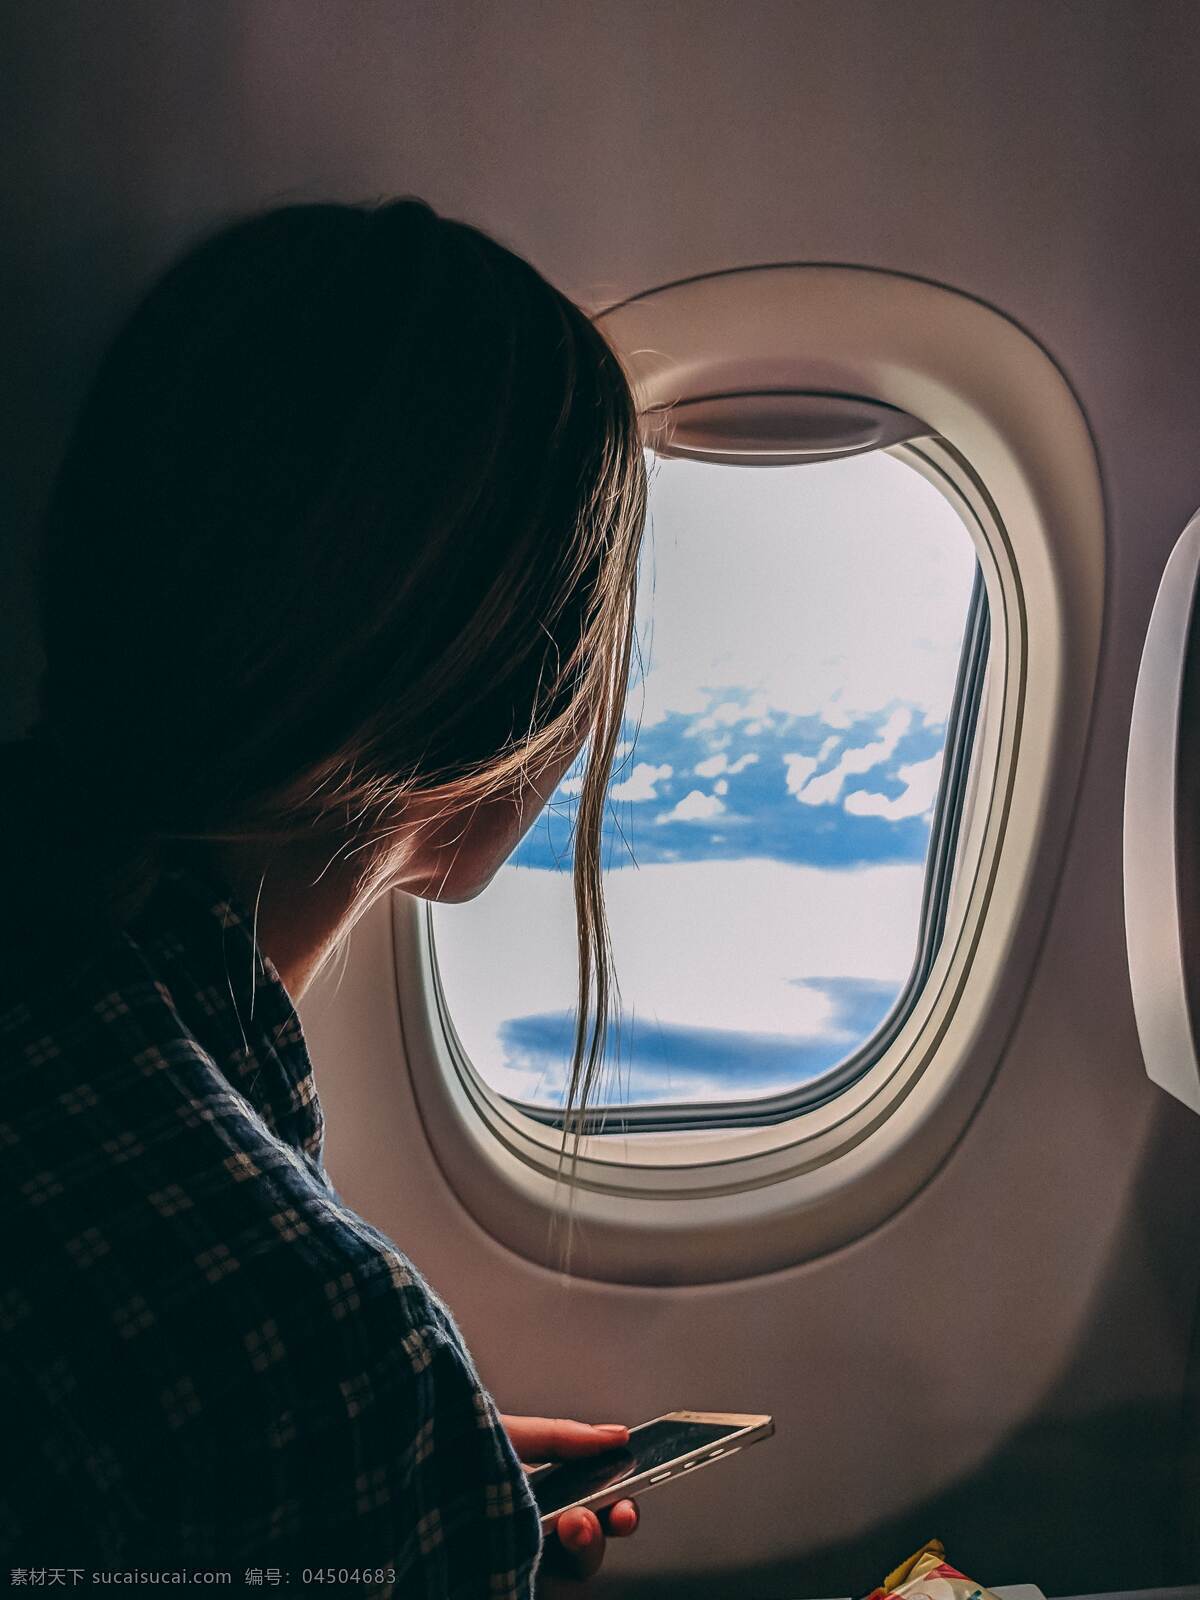 坐 飞机 女性 人 侧影 轮廓 窗户 室内 机舱 风景 游客 旅行 旅游 飞行 交通 交通工具 飞 独自 人物 人物图库 女性女人